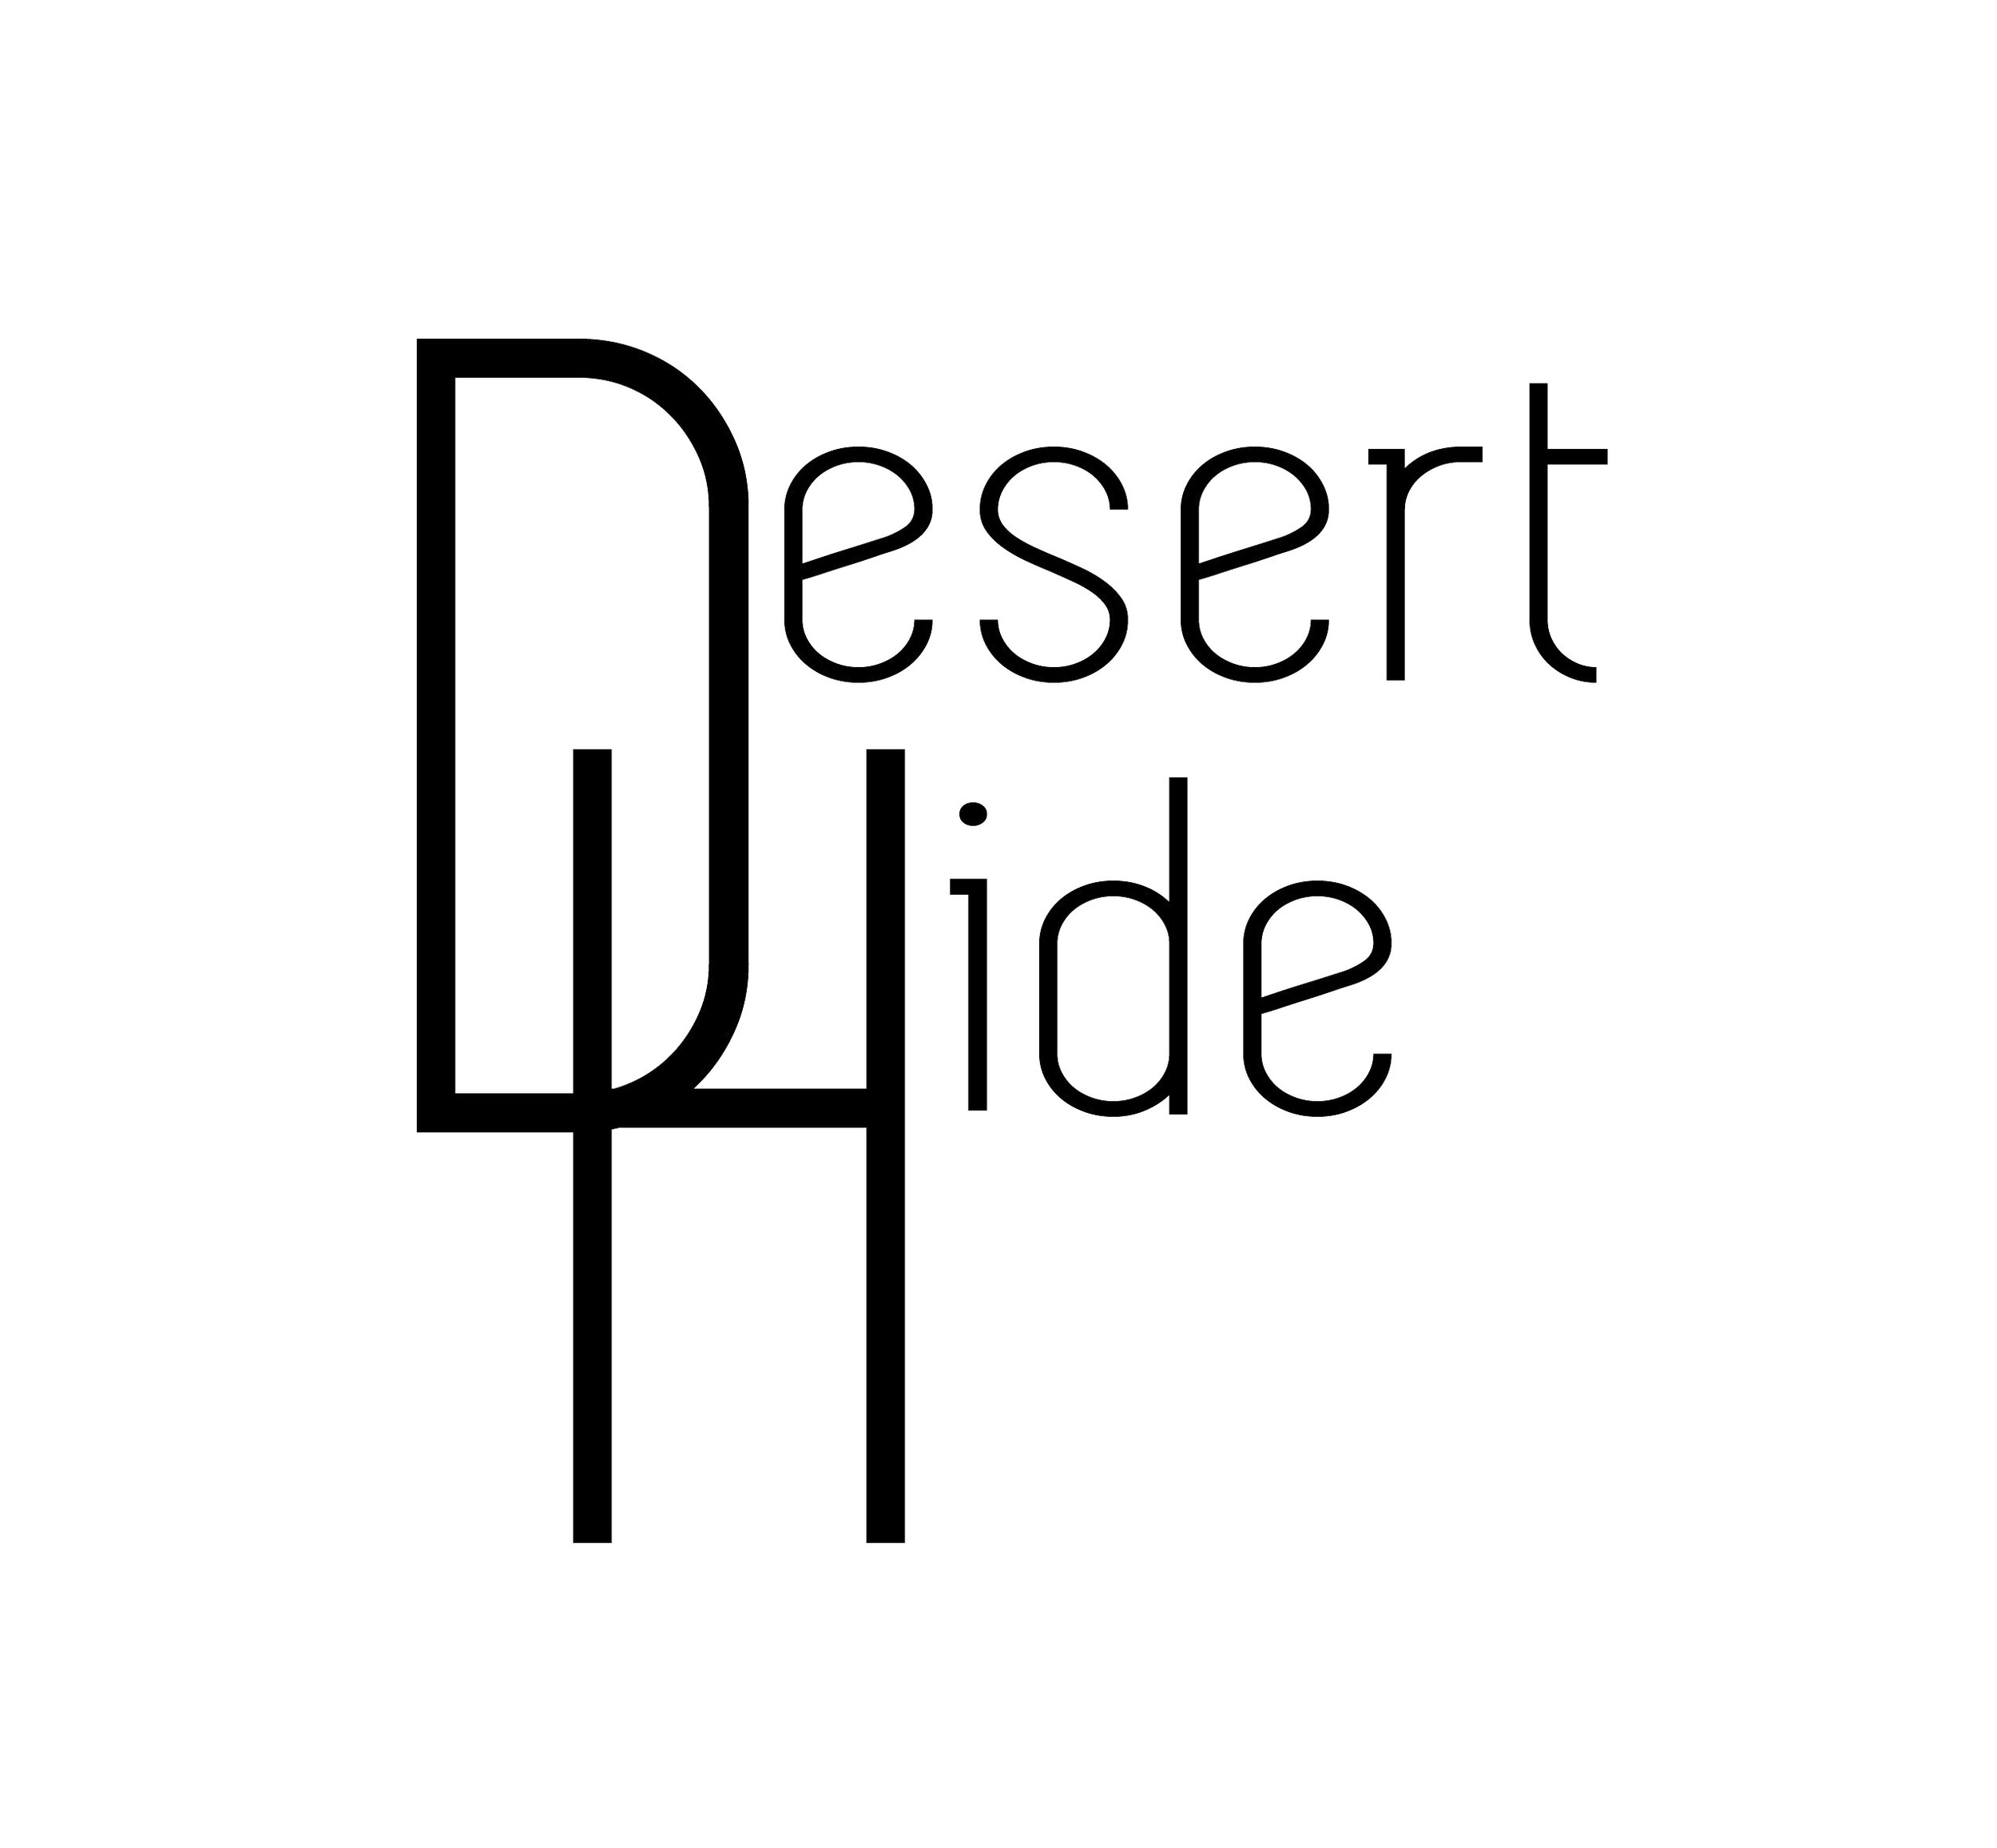 DESERT HIDE